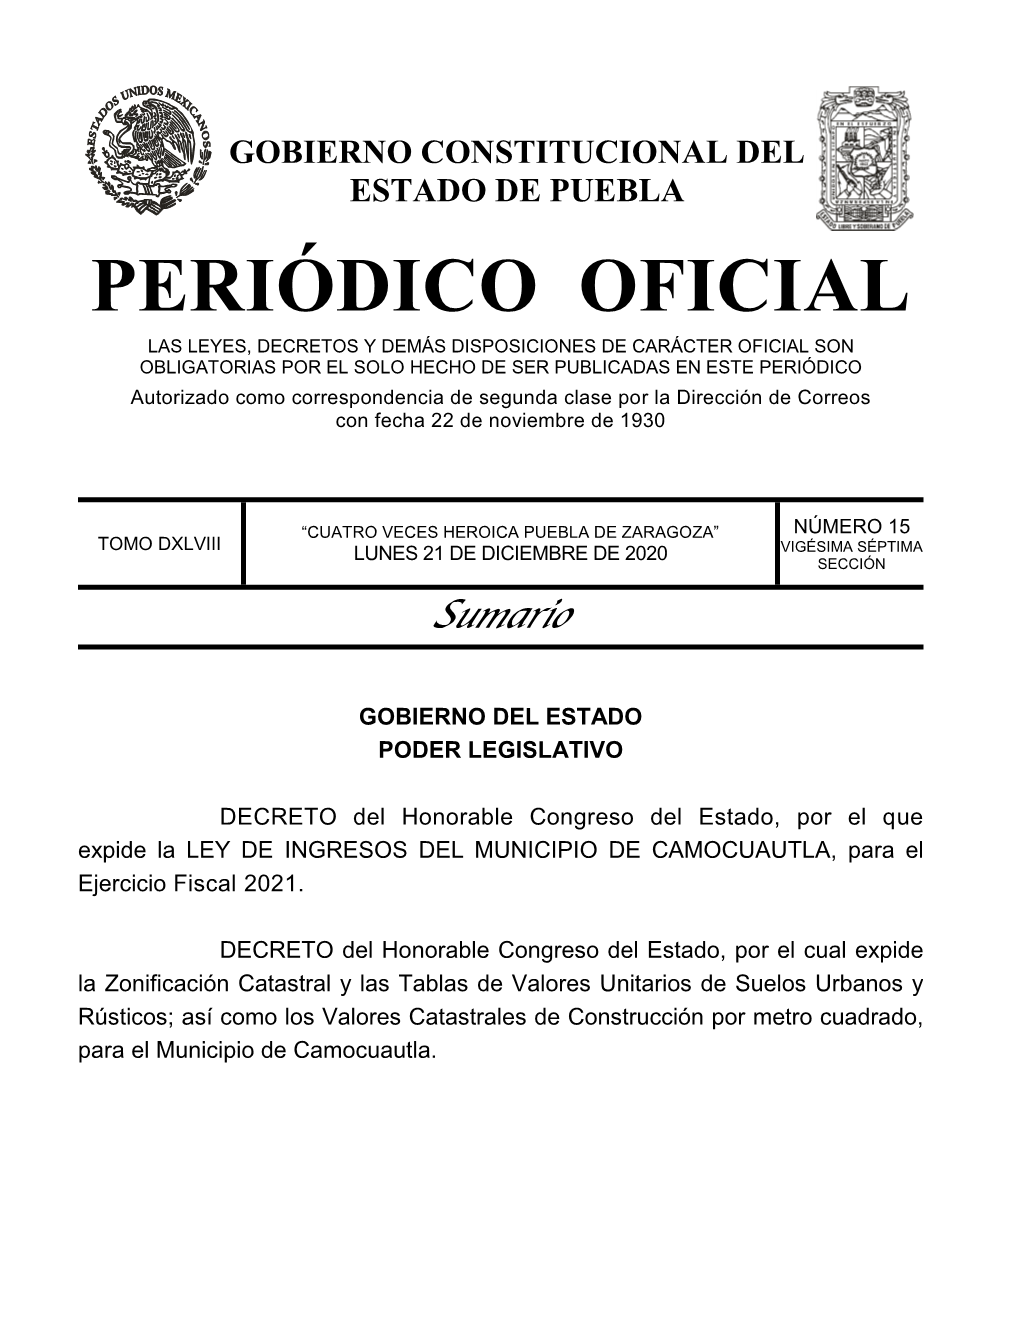 LEY DE INGRESOS DEL MUNICIPIO DE CAMOCUAUTLA, Para El Ejercicio Fiscal 2021